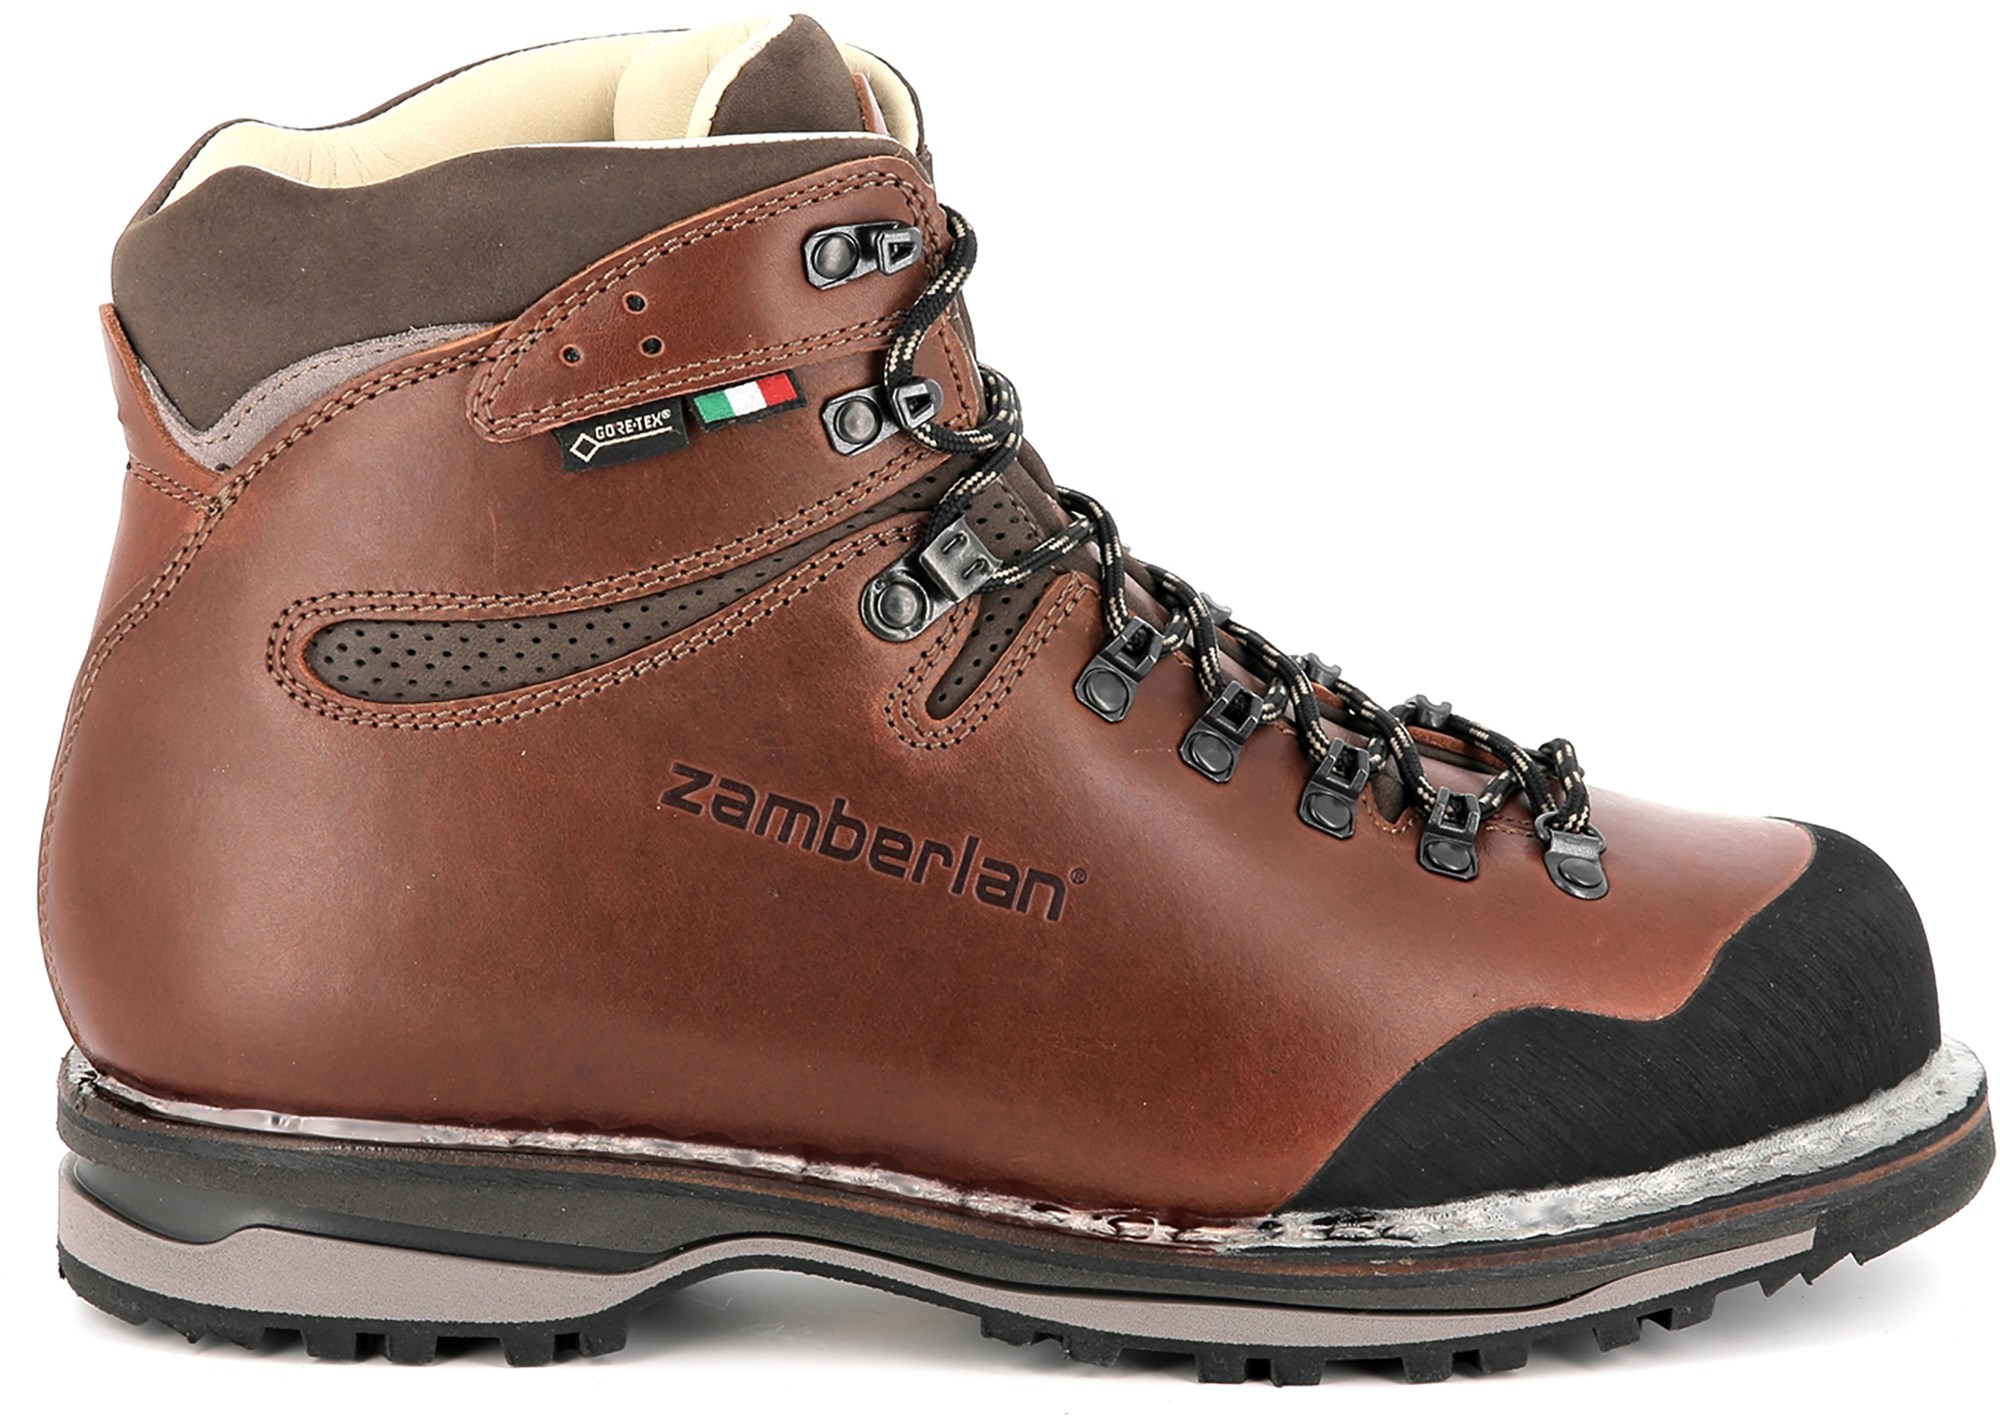 Походные ботинки Tofane NW GTX RR — мужские Zamberlan, коричневый фото